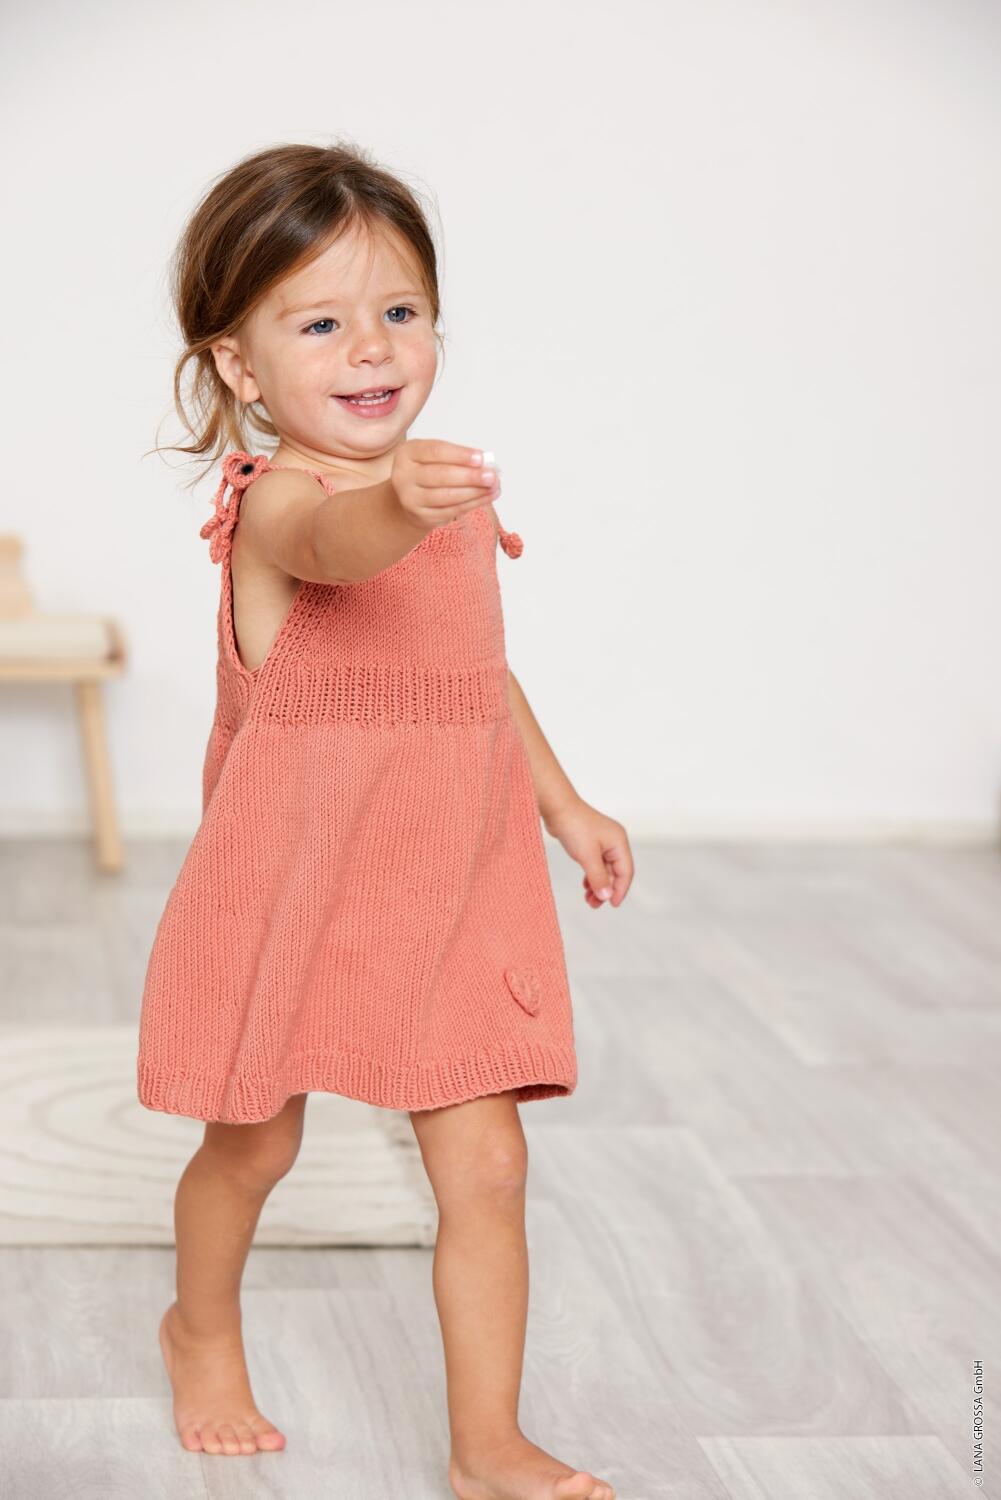 Lana Grossa Infanti 19 - Zauberhafte Babymode Kleid